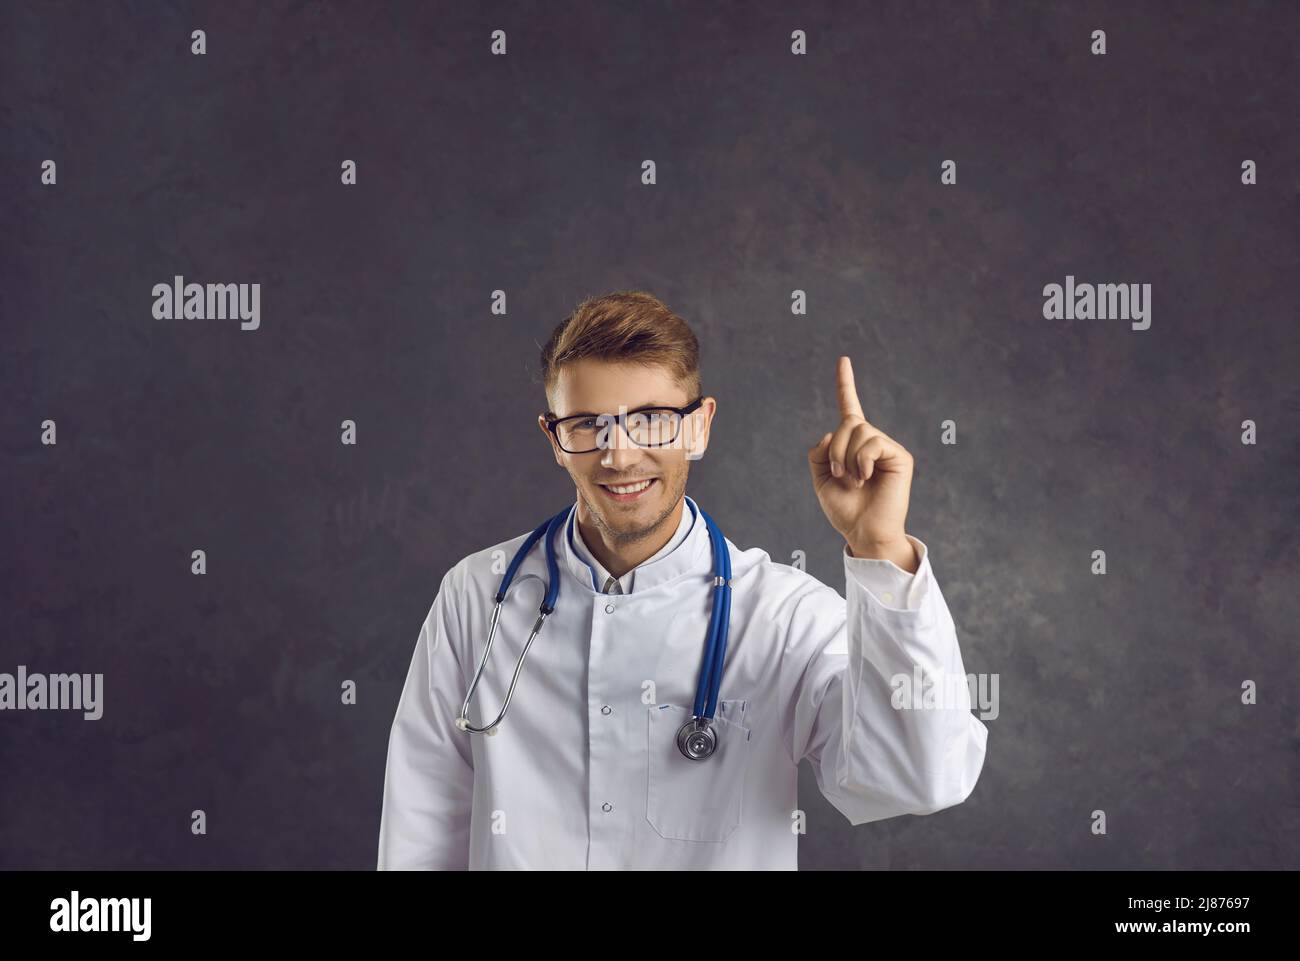 Ritratto di maschio medico raccomandare buona offerta di vendita Foto Stock